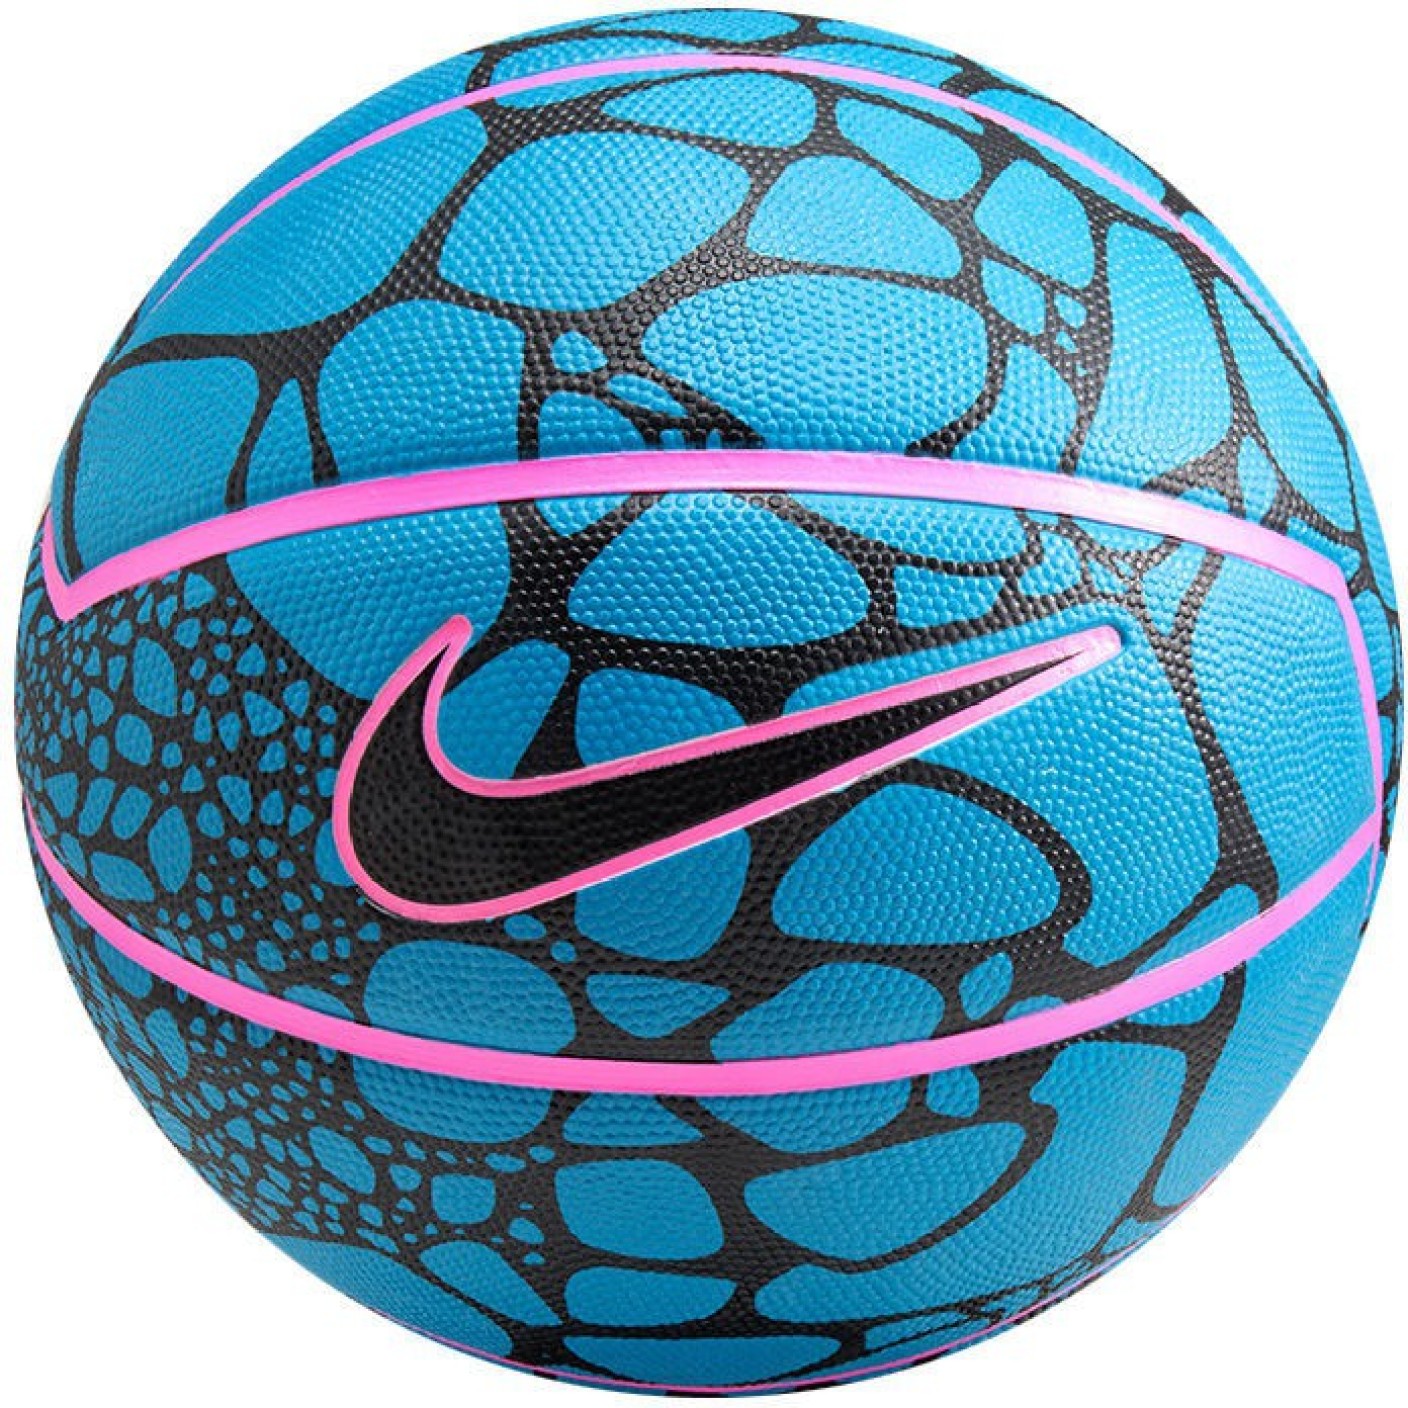 Nike LeBron XII Playground Basketball - Size: 7 - Buy Nike LeBron XII ...